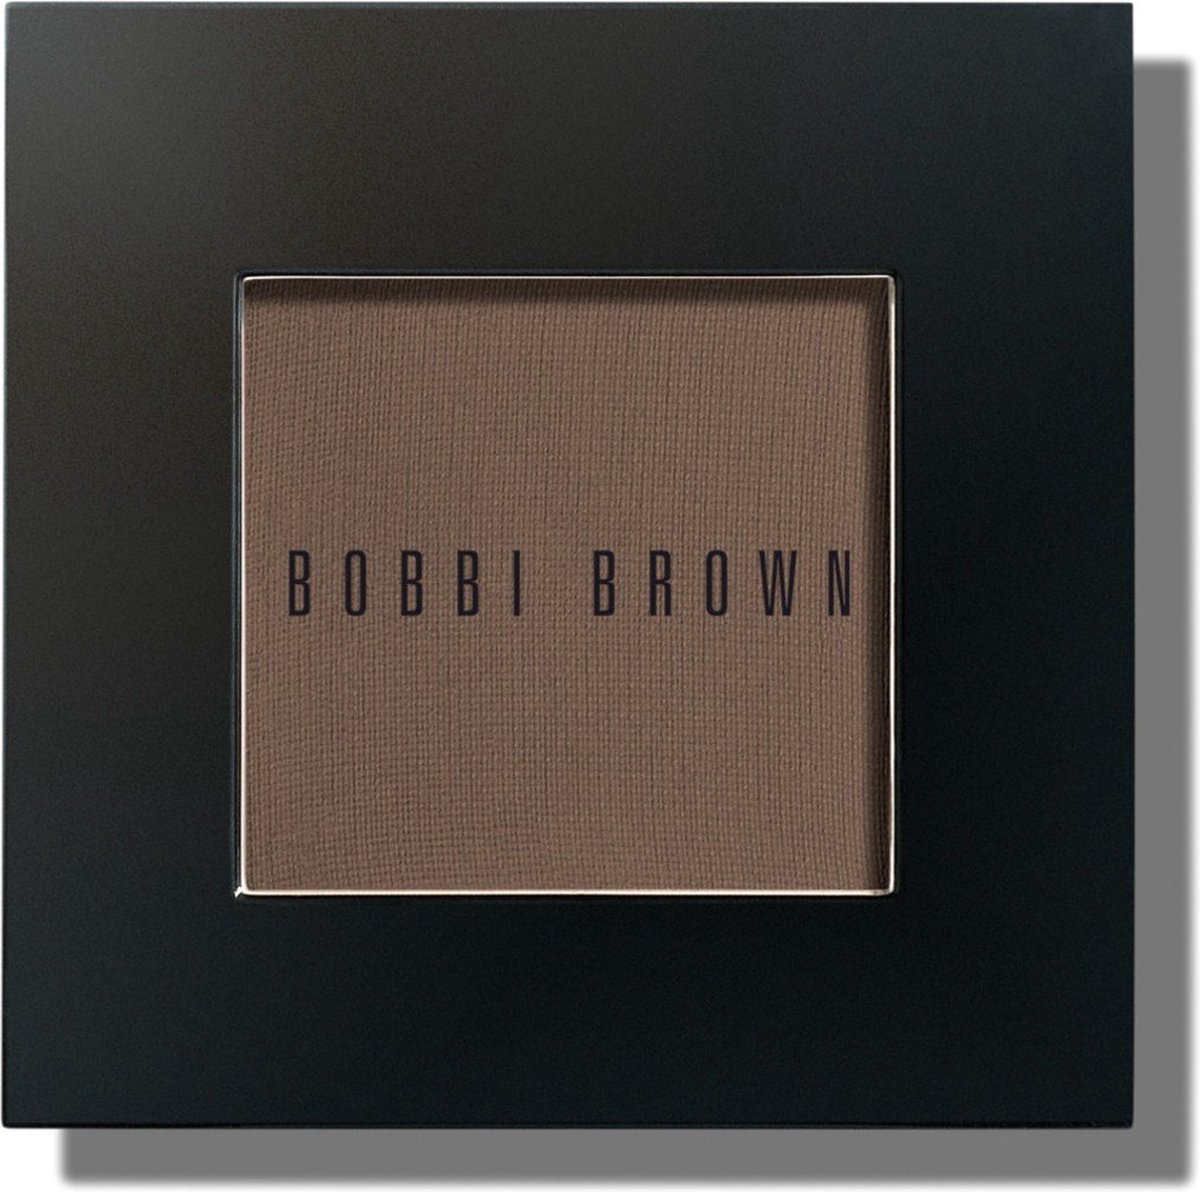 BOBBI BROWN - Eyeshadow - Mahogany - 2 g - oogschaduw